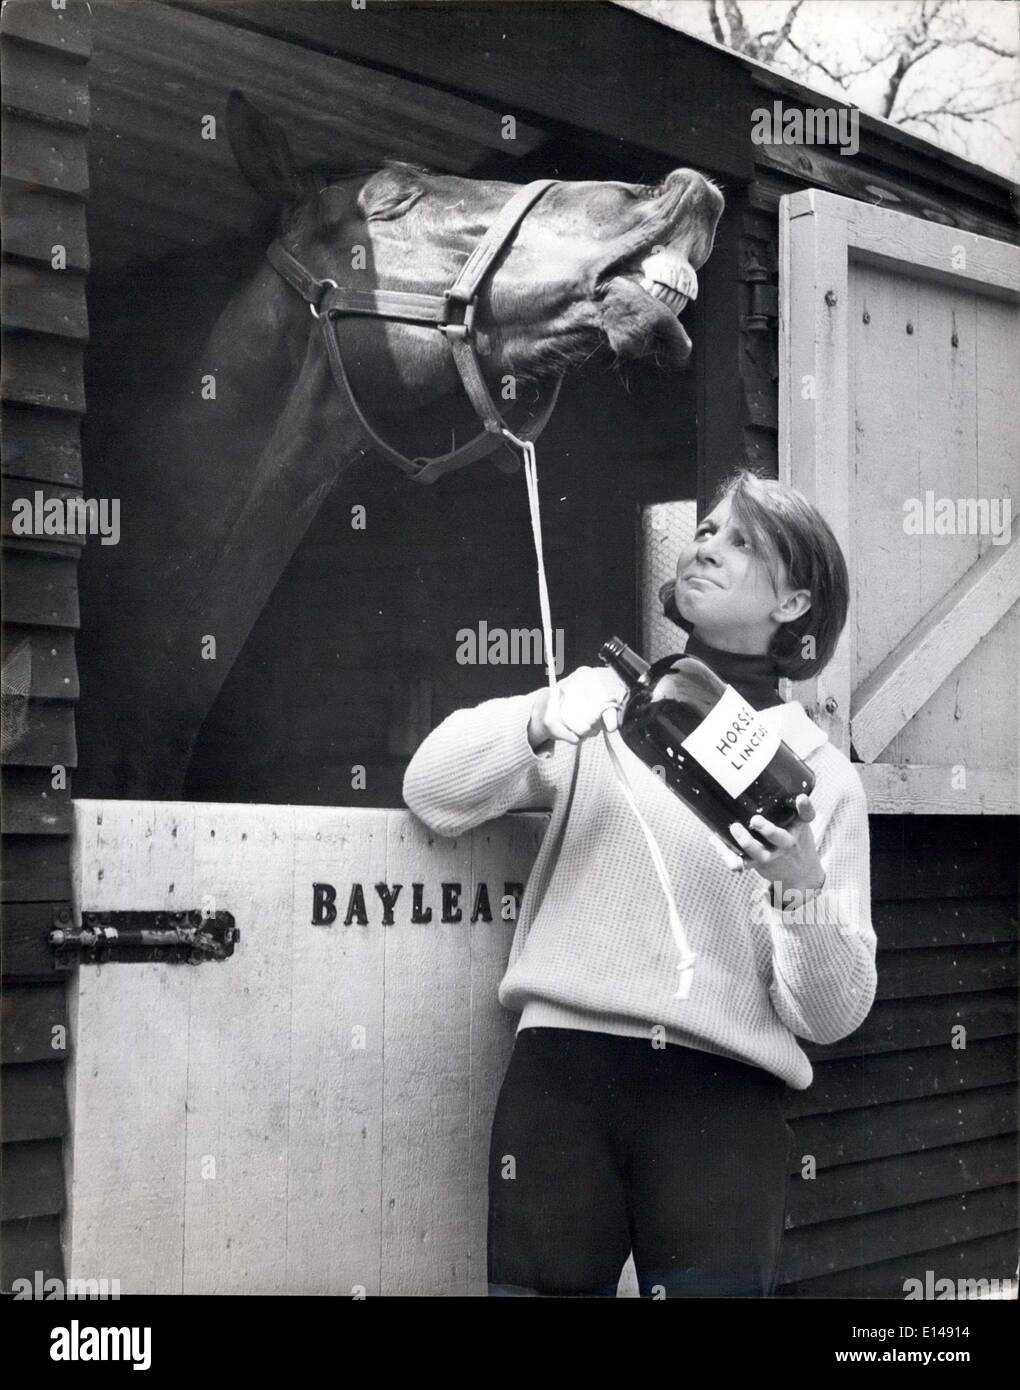 Apr. 17, 2012 - La Tosse per un cavallo gola: una prescrizione raffermo; Giorno balestra è in fase di stallo. Come molti dei suoi amici in tutto il paese ha la tosse. E quando si tratta di prendere la sua medicina ha starnutito troppo - anche se ha una delle più belle specie di medici che va. Ella è di 17-anno-vecchio Susan Sargon, di sander stead nel Surrey - e quando il suo cavallo, la foglia di alloro, un ex-racer, ha ottenuto il cavallo flu ha deciso di fare qualcosa a riguardo. Così andò al chimico e aveva un cavallo speciale prescrizione medica composta. E la foglia di alloro non pensa la maggior parte di esso Foto Stock